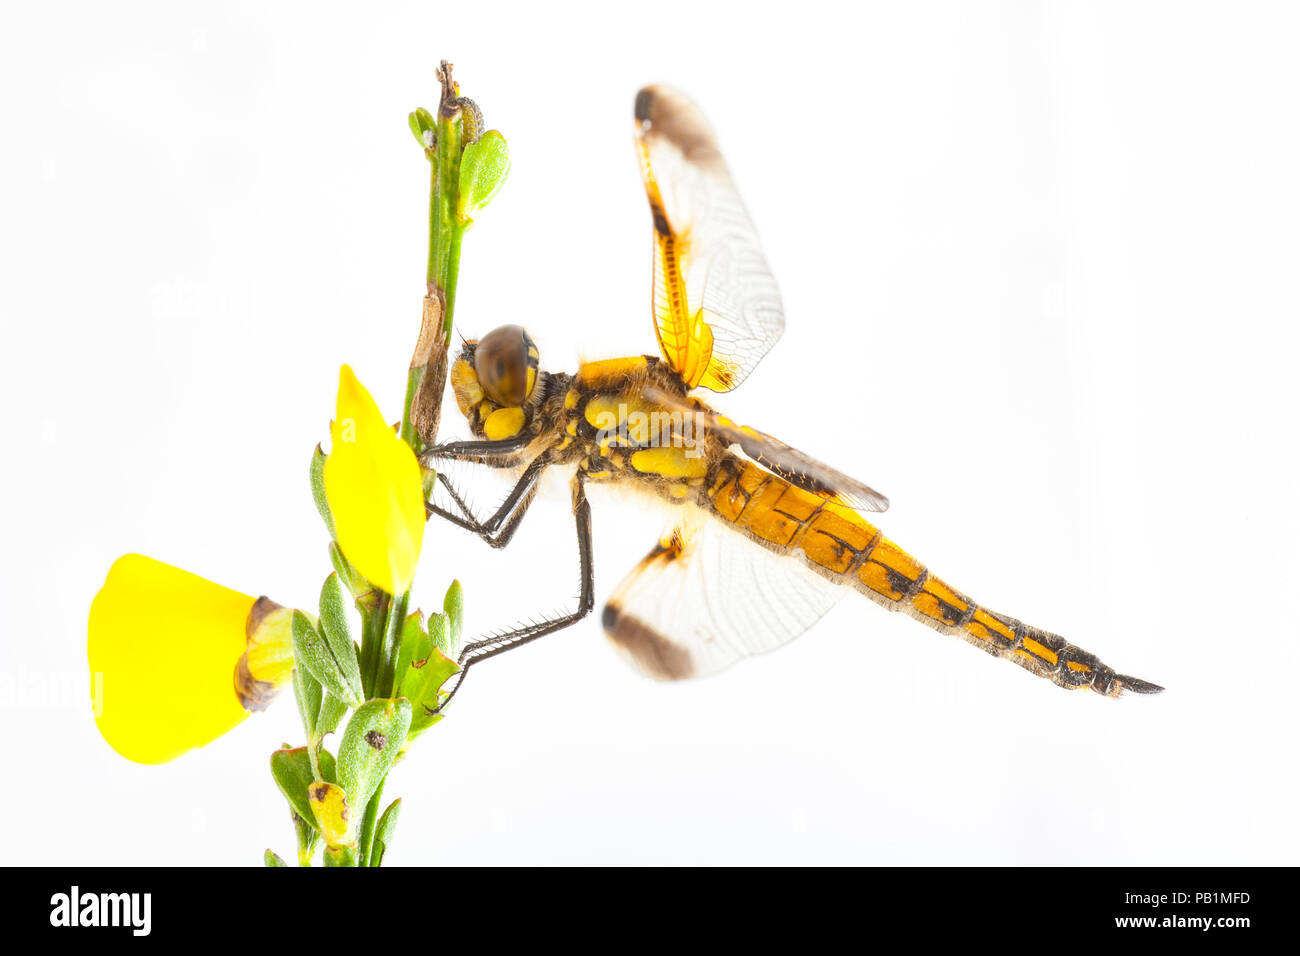 Un quattro-spotted chaser dragonfly, Libellula quadrimatriculata, fotografata in uno studio su sfondo bianco in appoggio su una scopa Boccola stelo con fiori Foto Stock